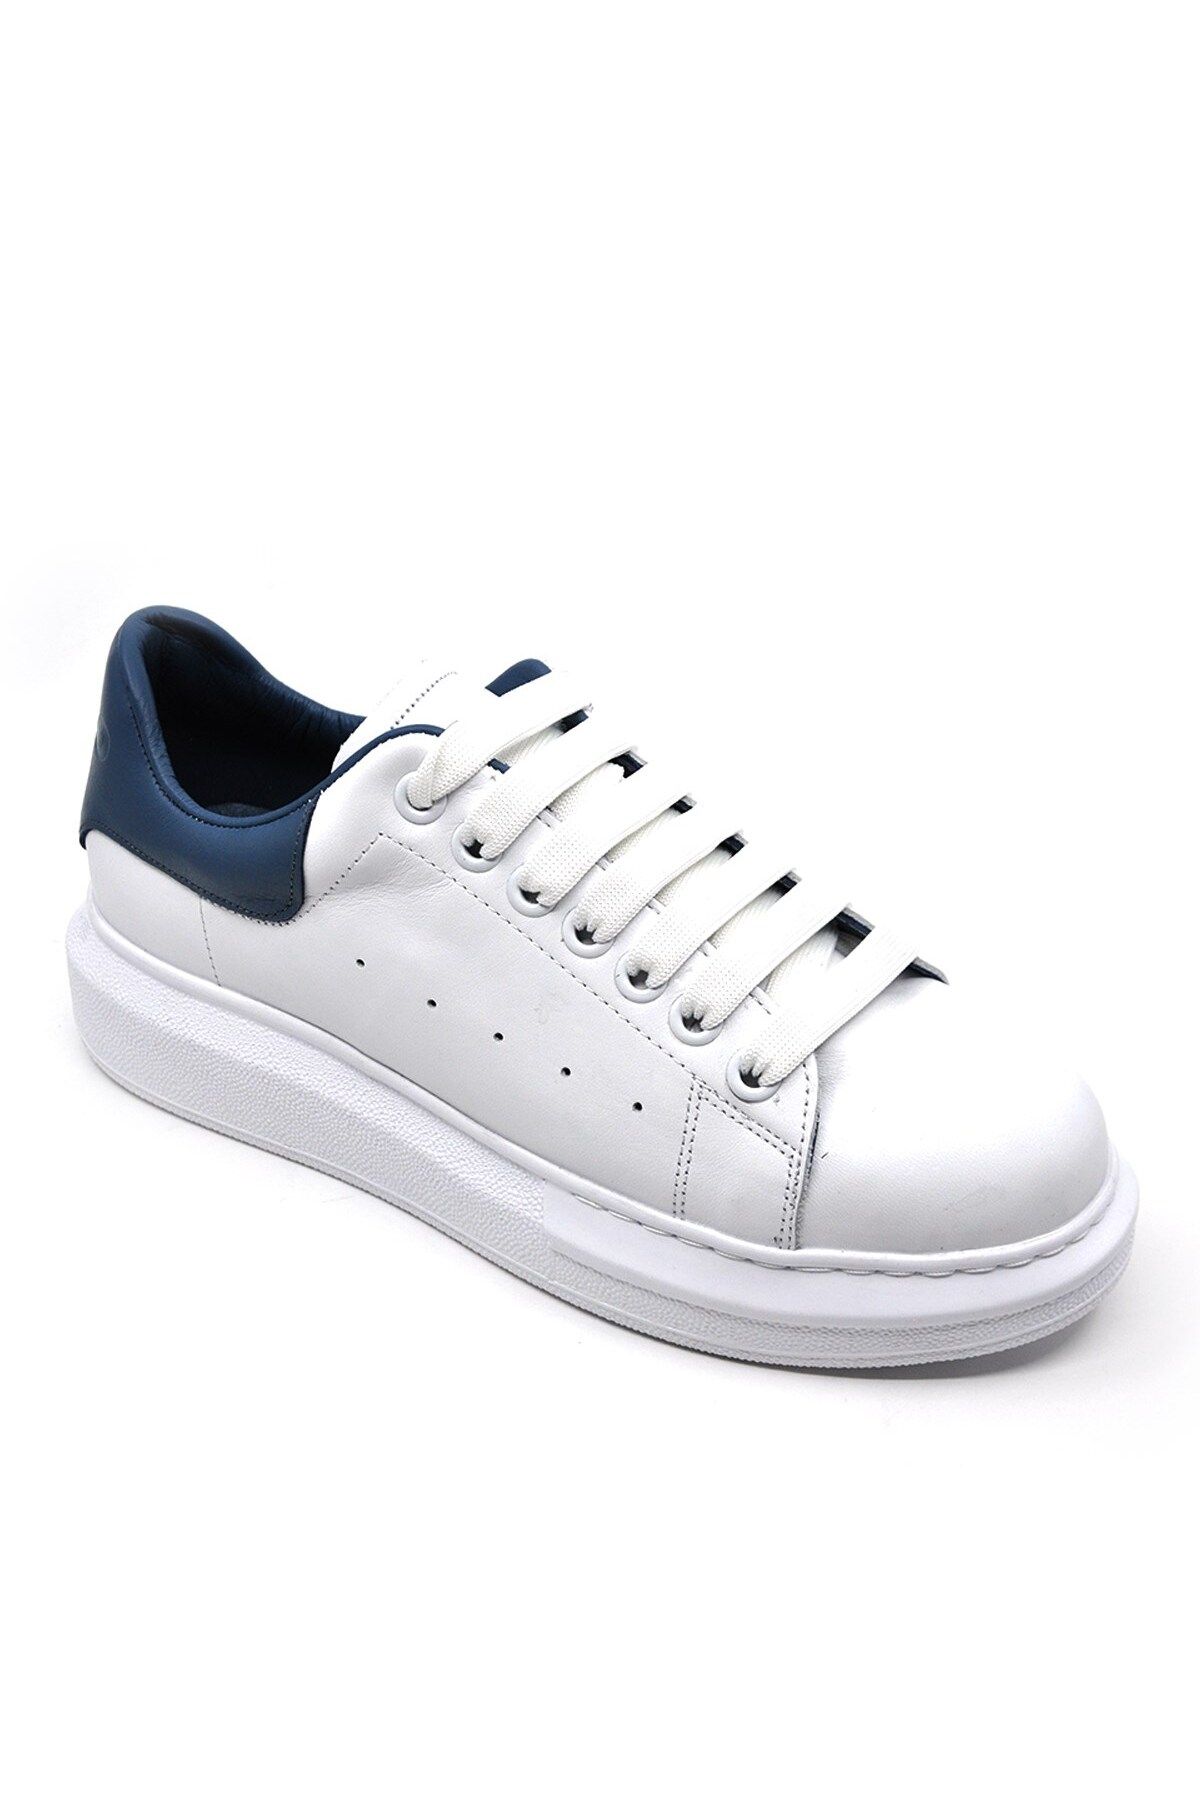 Fosco Hakiki Deri Erkek Sneaker Ayakkabı Beyaz Mavi 9838